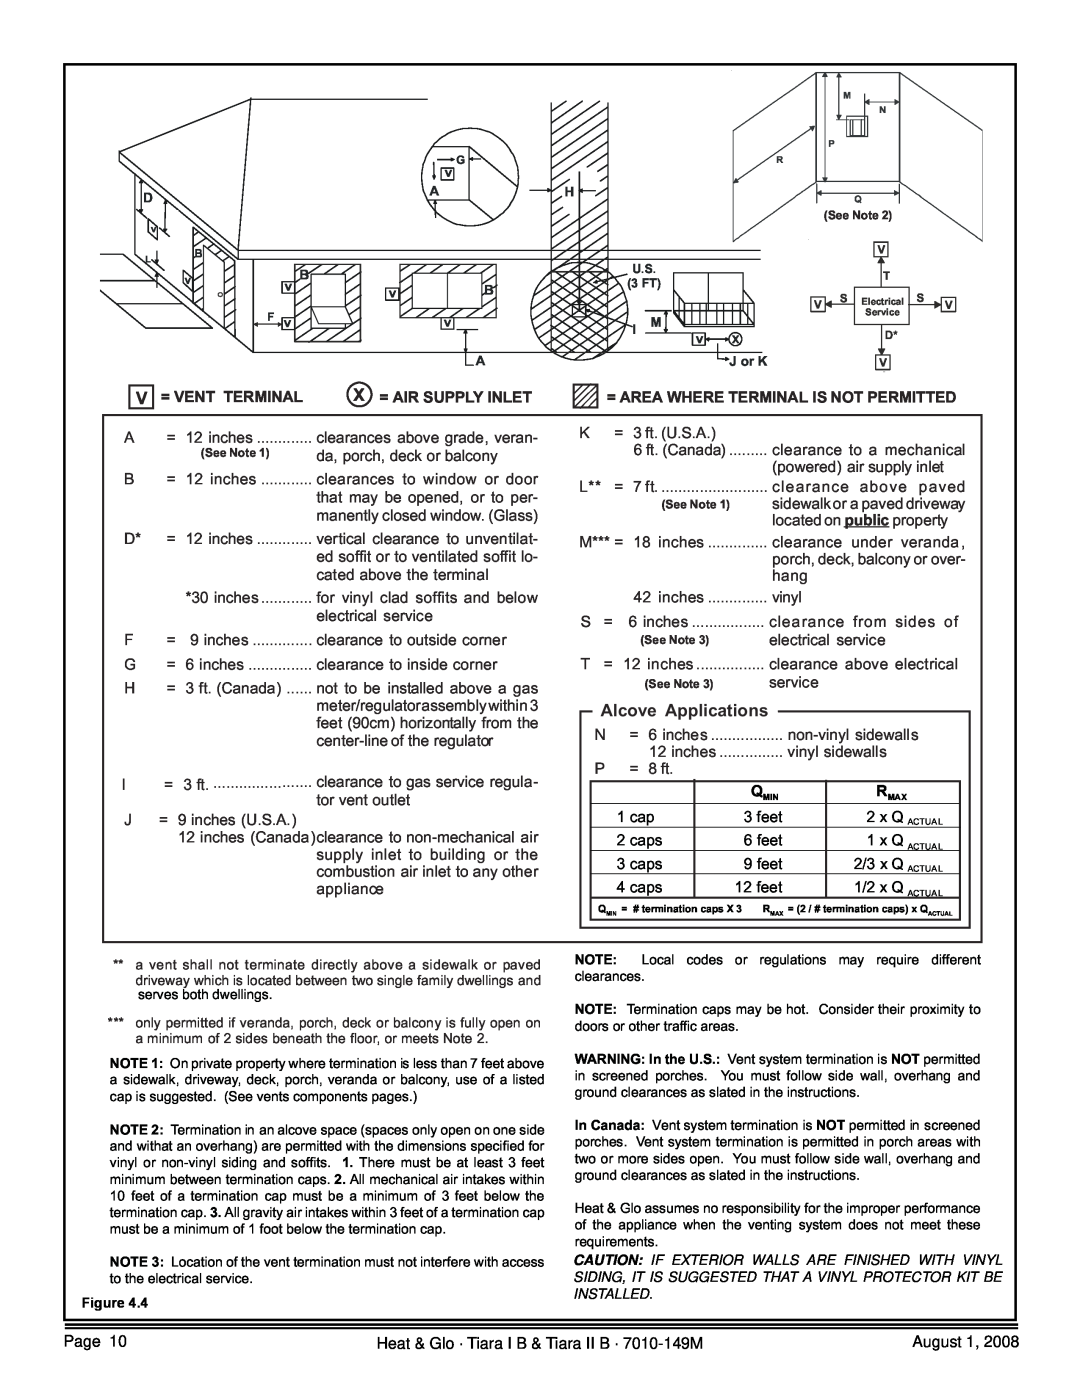 Hearth and Home Technologies TIARAI-BK-B Alcove Applications, = Vent Terminal, X = Air Supply Inlet, 1 cap, feet, caps 